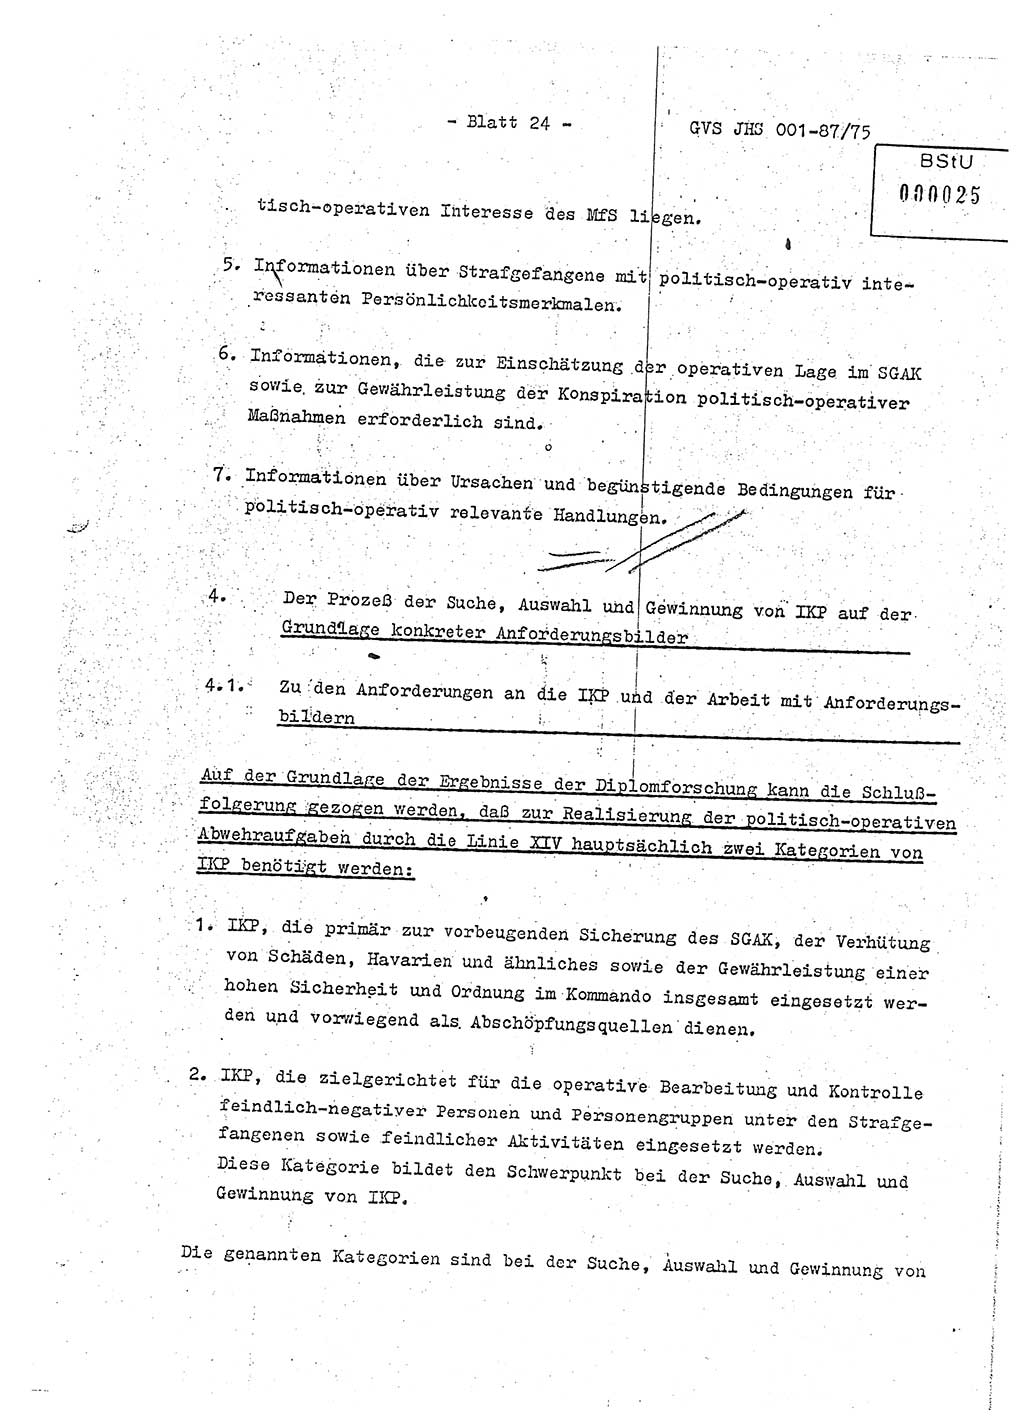 Diplomarbeit Hauptmann Volkmar Heinz (Abt. ⅩⅣ), Oberleutnant Lothar Rüdiger (BV Lpz. Abt. Ⅺ), Ministerium für Staatssicherheit (MfS) [Deutsche Demokratische Republik (DDR)], Juristische Hochschule (JHS), Geheime Verschlußsache (GVS) o001-87/75, Potsdam 1975, Seite 24 (Dipl.-Arb. MfS DDR JHS GVS o001-87/75 1975, S. 24)